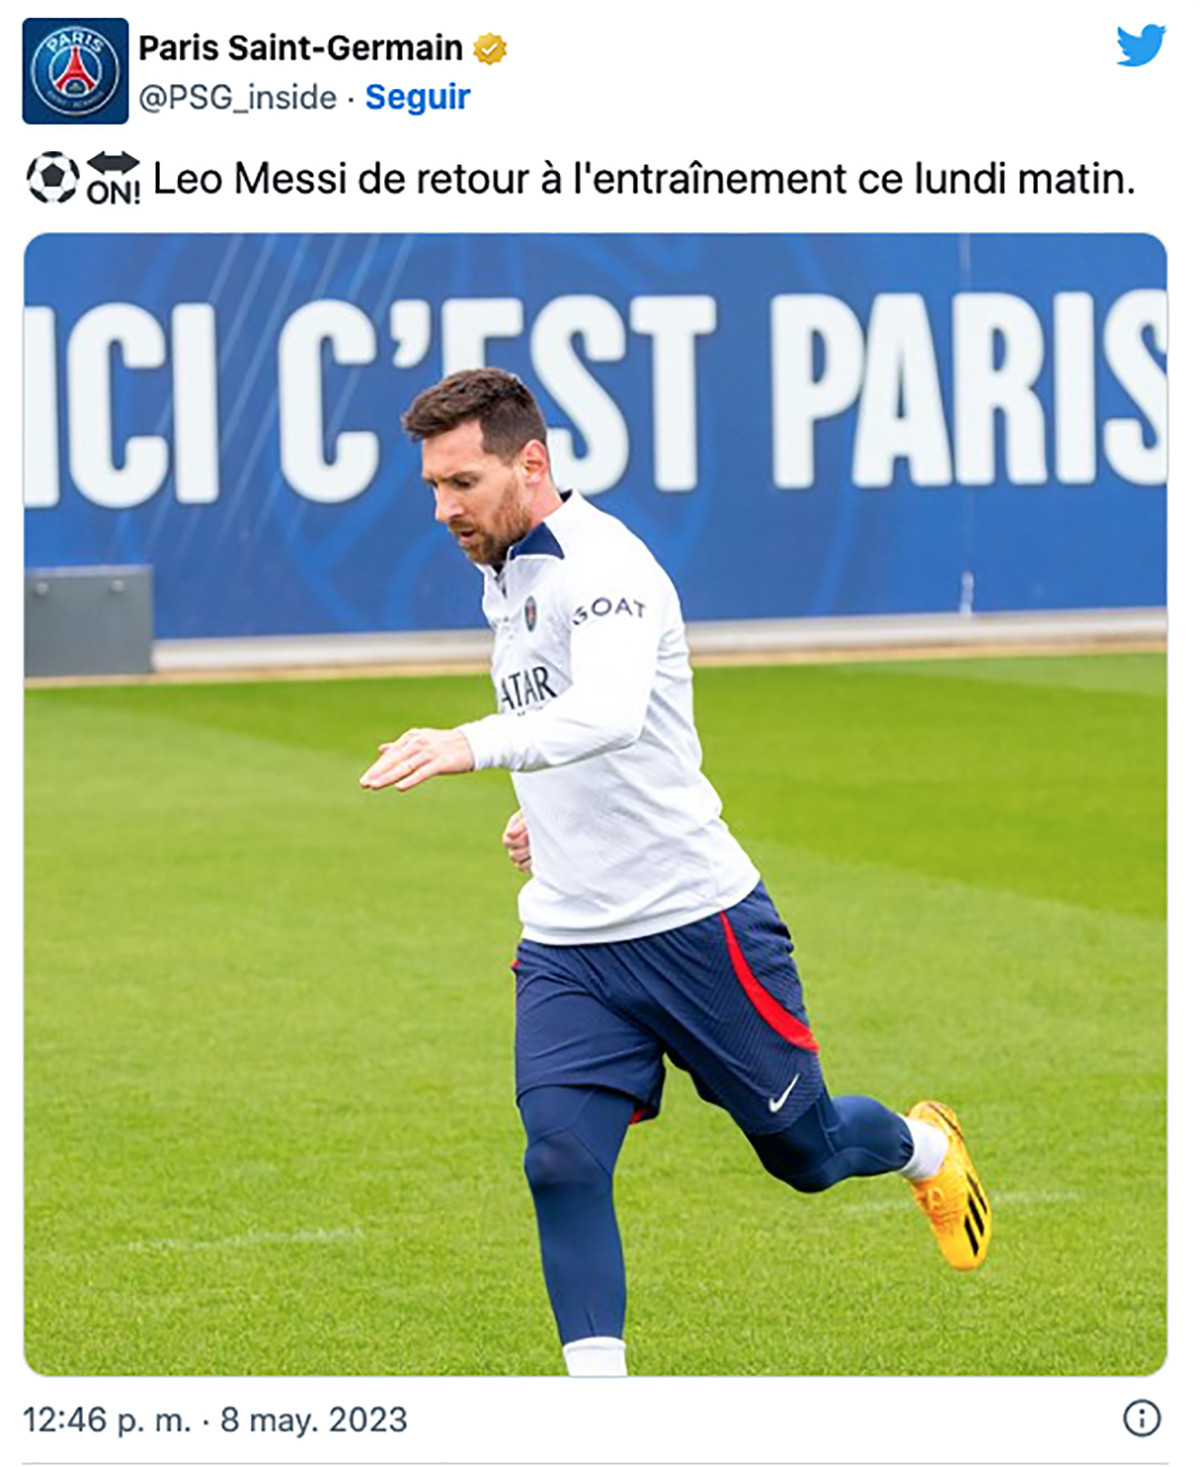 El PSG anuncia la vuelta de Messi a los entrenamientos / PSG